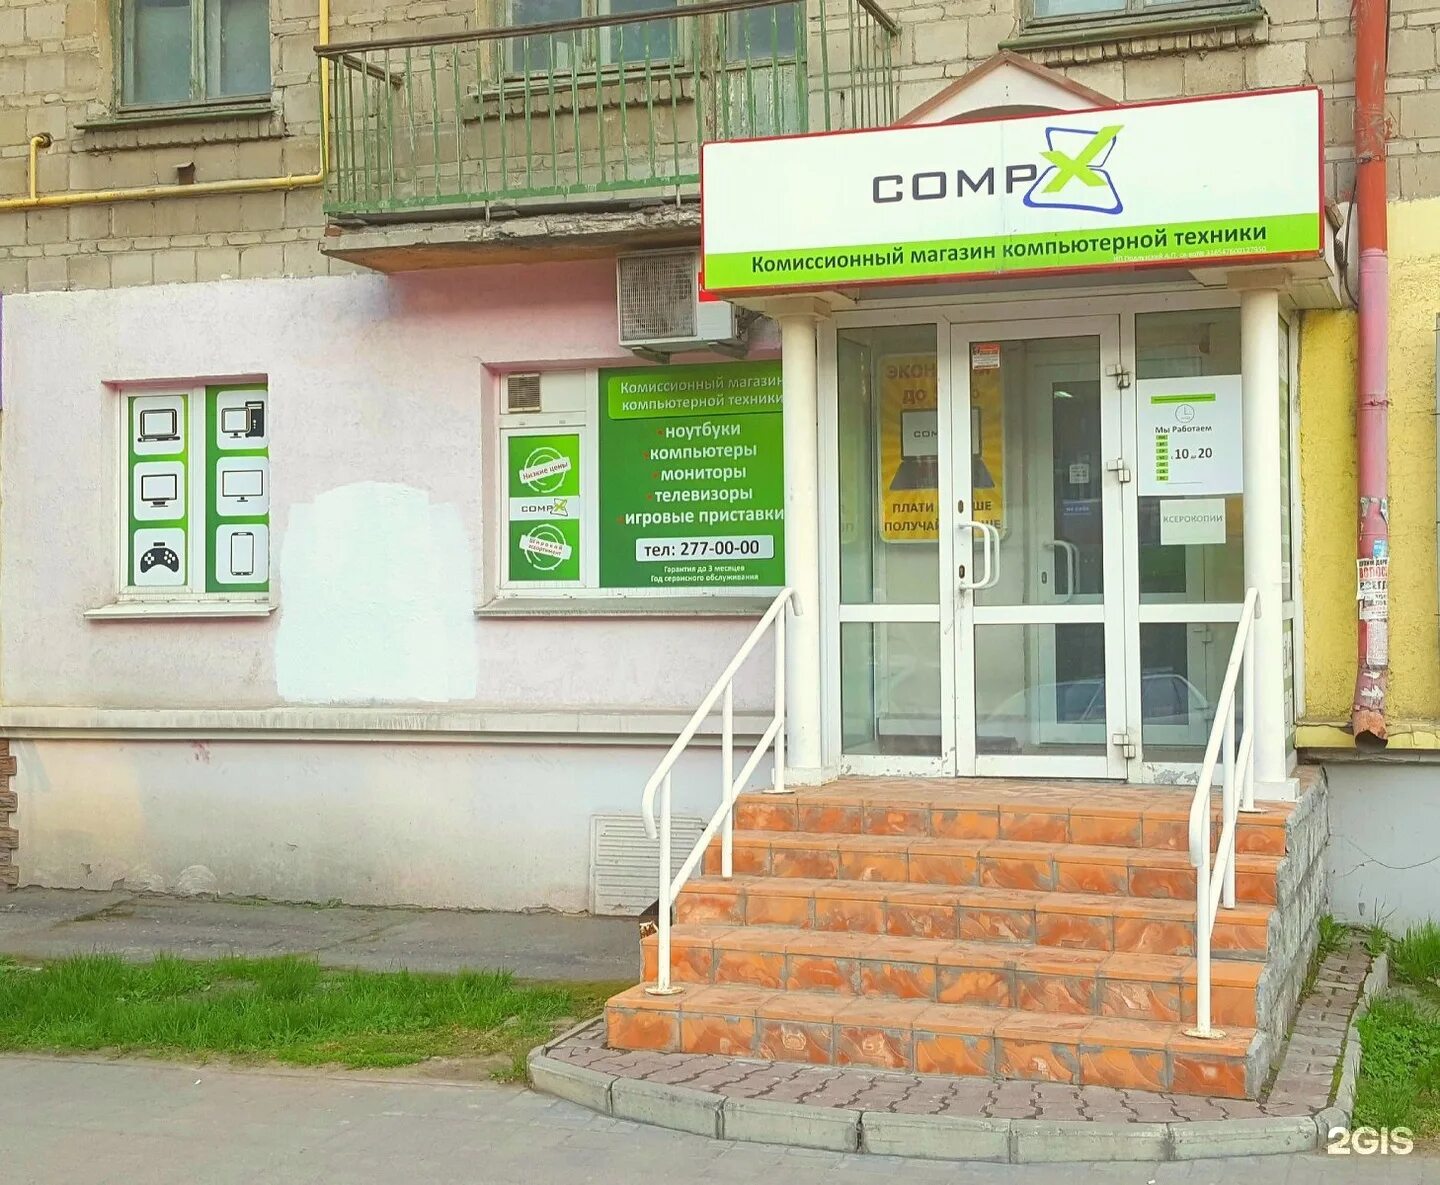 Комиссионный магазин владивосток. Комиссионный магазин техники. Комиссионный магазин компьютерной техники. Комиссионка Новосибирск.